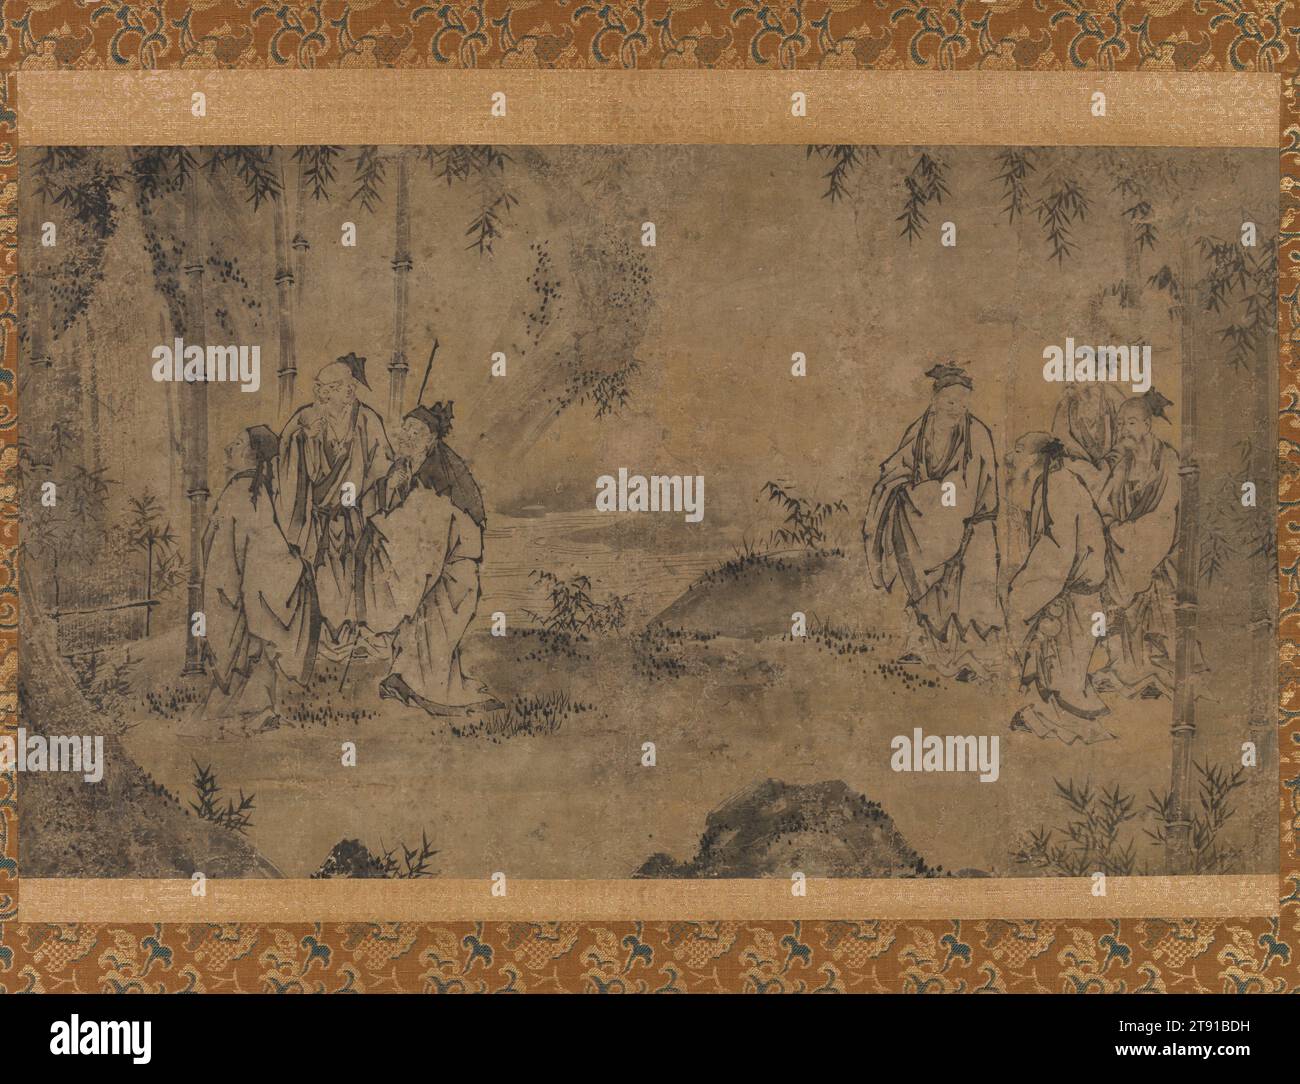 Sieben Weisen aus dem Bambushain, erste Hälfte des 16. Jahrhunderts, Seikō, Japaner, Act. Erste Hälfte des 16. Jahrhunderts, 1/4 x 1/8 Zoll (31,12 x 53,66 cm) (Bild)43 3/4 x 25 7/8 Zoll (111,13 x 65,72 cm) (Halterung, ohne Rolle ), Tinte auf Papier, Japan, 16. Jahrhundert, dieses Gemälde zeigt sieben Gelehrte aus China des dritten Jahrhunderts, die sich in der Nähe eines Gebirgsstroms und eines Bambushains versammelt haben. Vier Gelehrte unterhalten sich rechts, drei links bewundern einen Wasserfall. Künstler begannen bereits im vierten Jahrhundert in China und im neunten Jahrhundert in Japan, Bilder der sogenannten „Sieben Weisen des Bambushains“ zu erschaffen Stockfoto